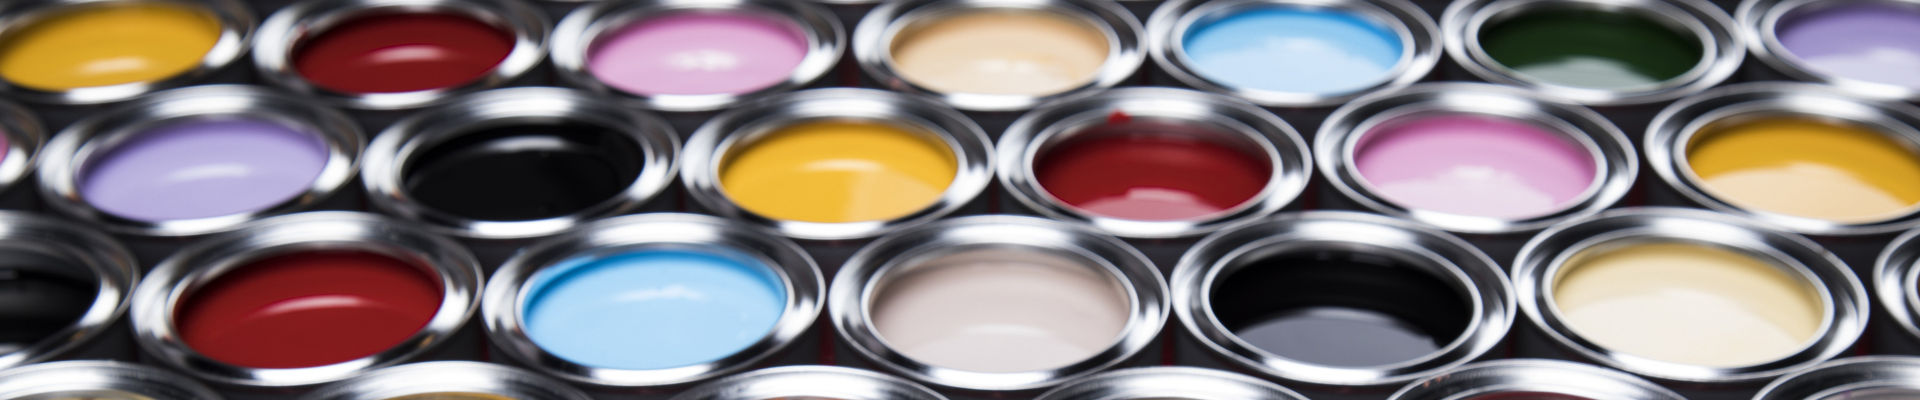 다양한 색상의 페인트를 포함하는 넓은 배열의 개방형 페인트 캔